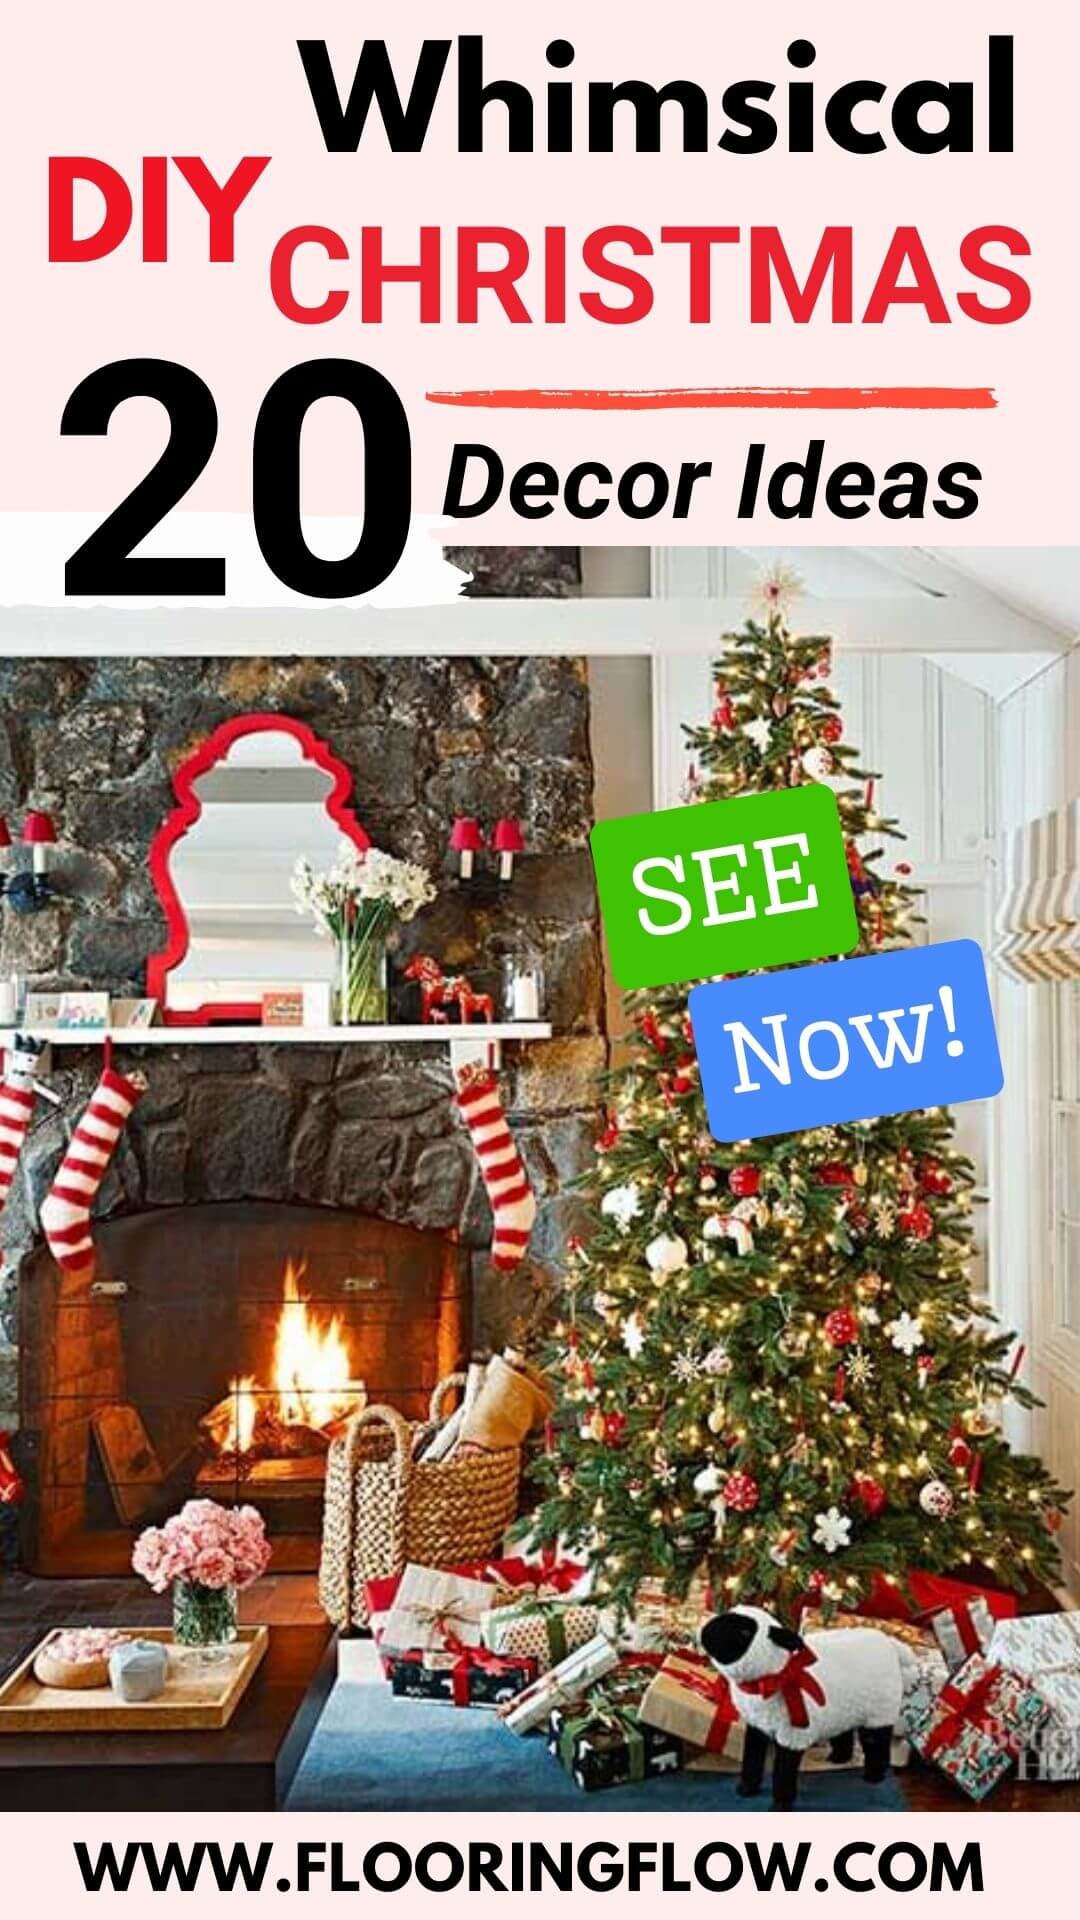 DIY Whimsical Christmas Decor Ideas